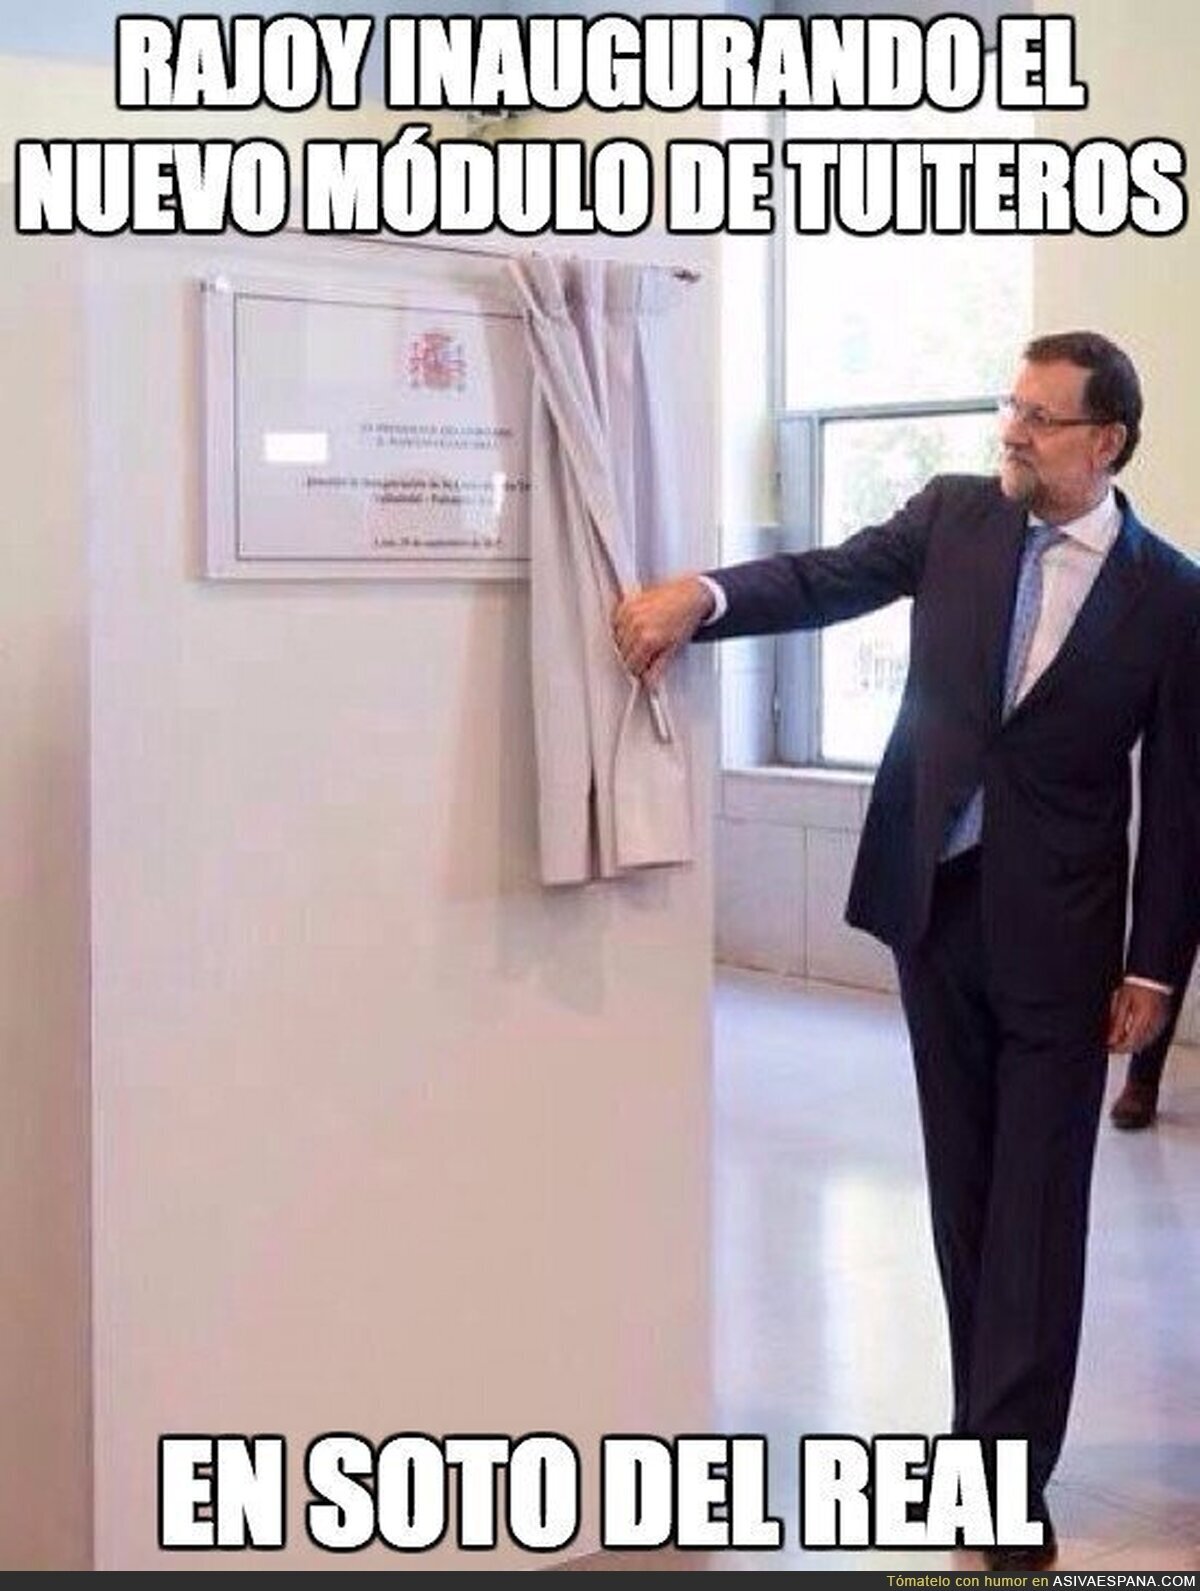 Rajoy inaugurando el nuevo módulo de tuiteros